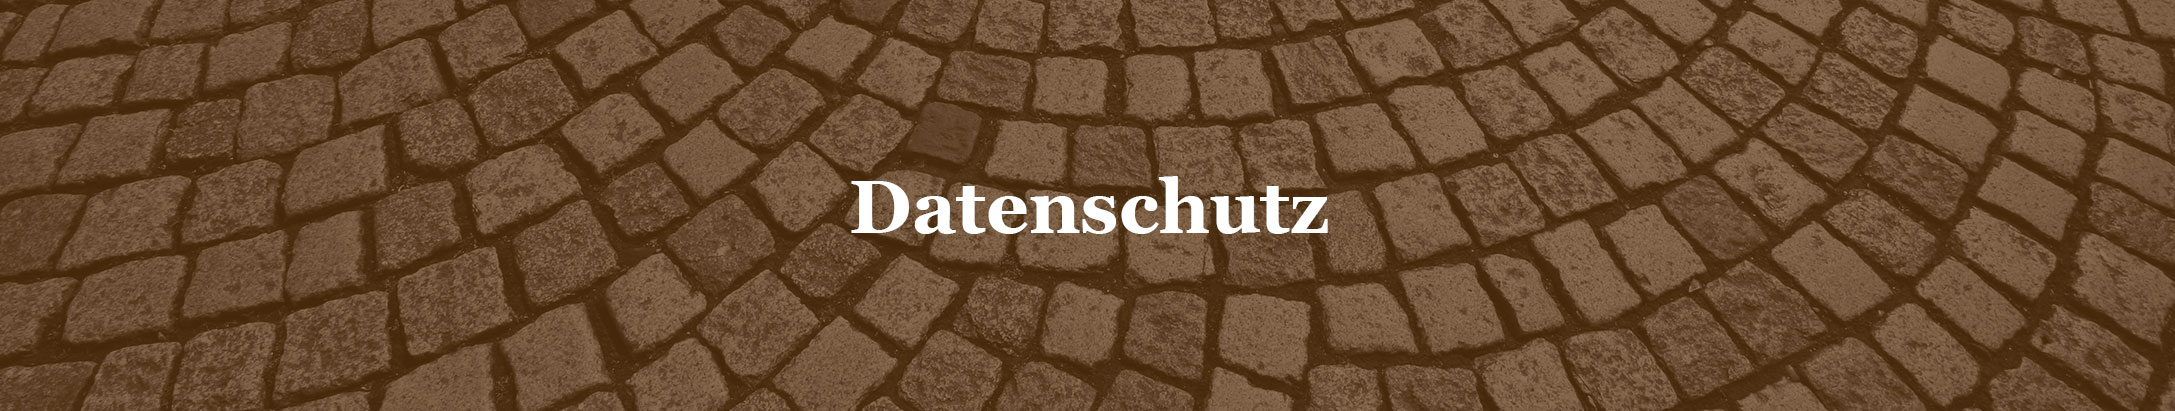 header_datenschutz